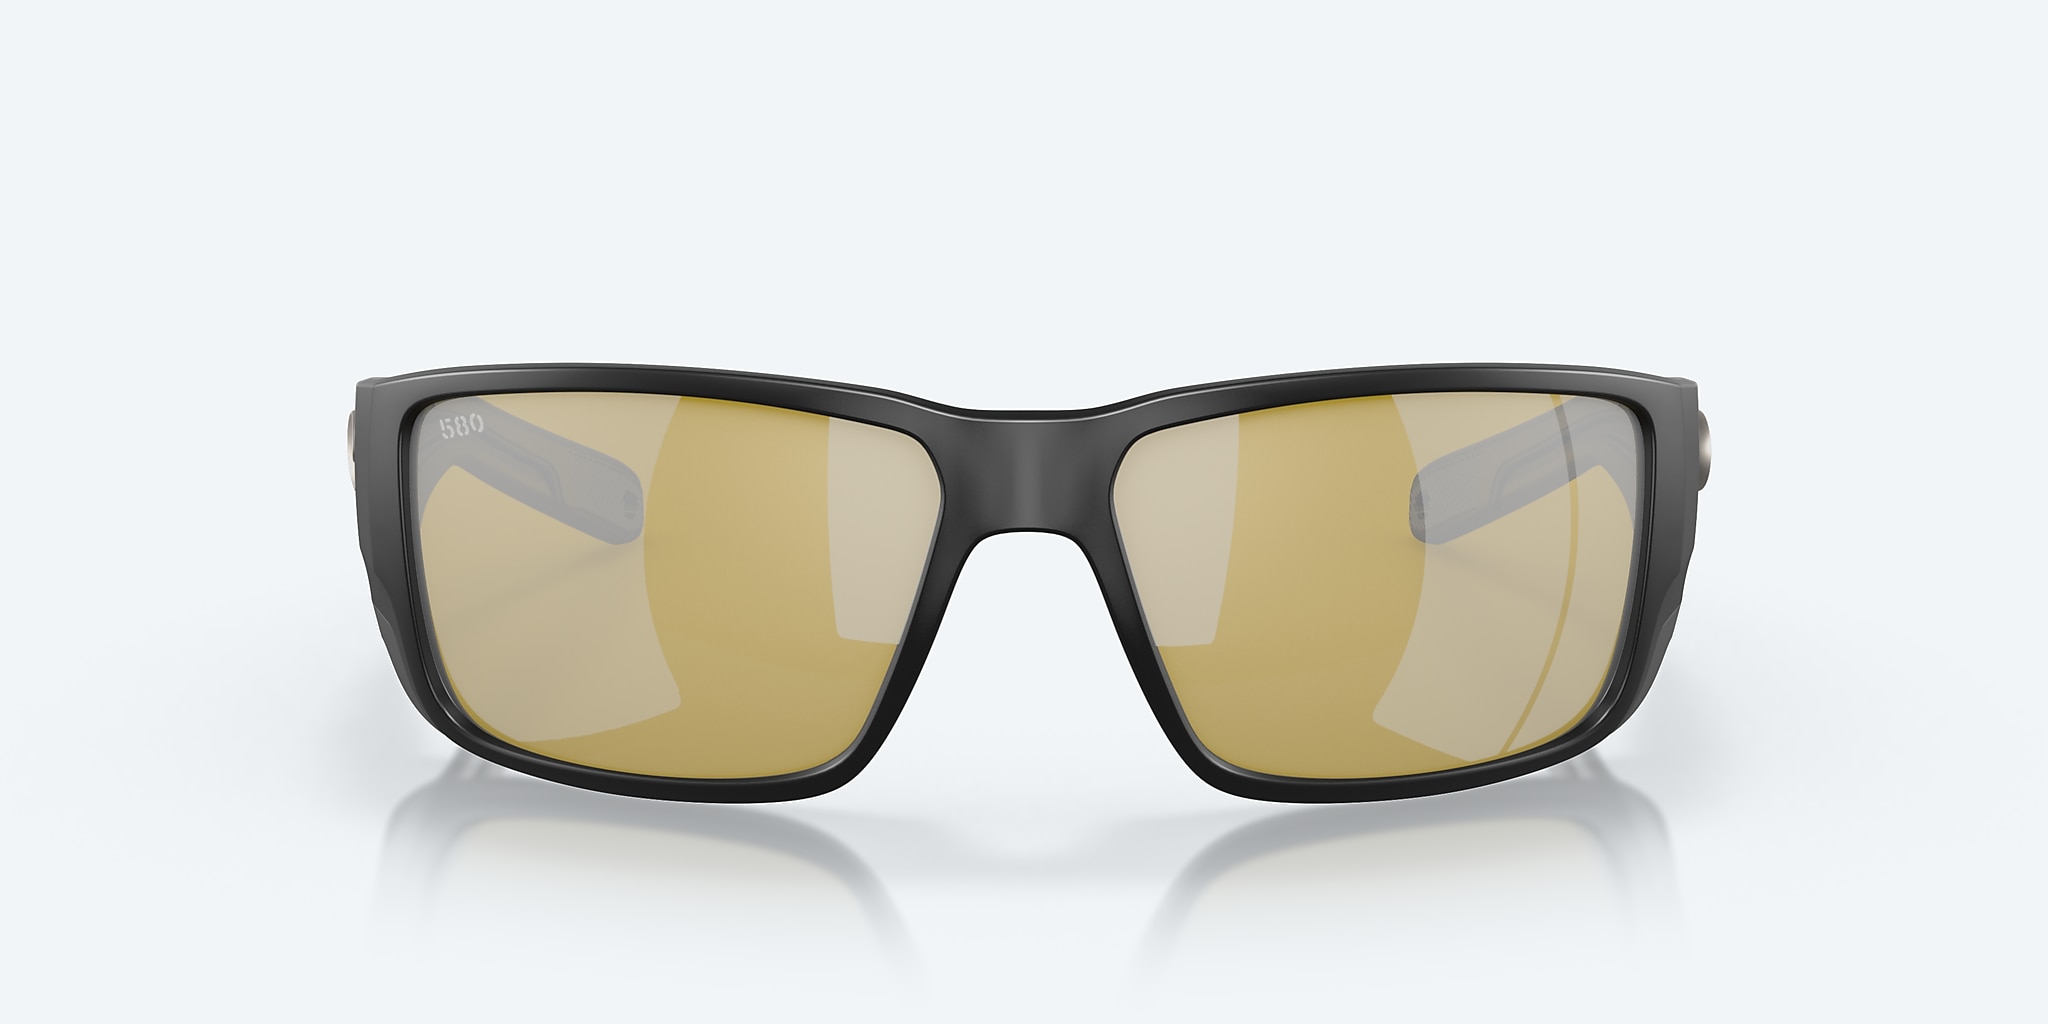 COSTA DEL MAR black/sunrise silver mirror JOSE PRO polarized 580G sunglasses  NEW